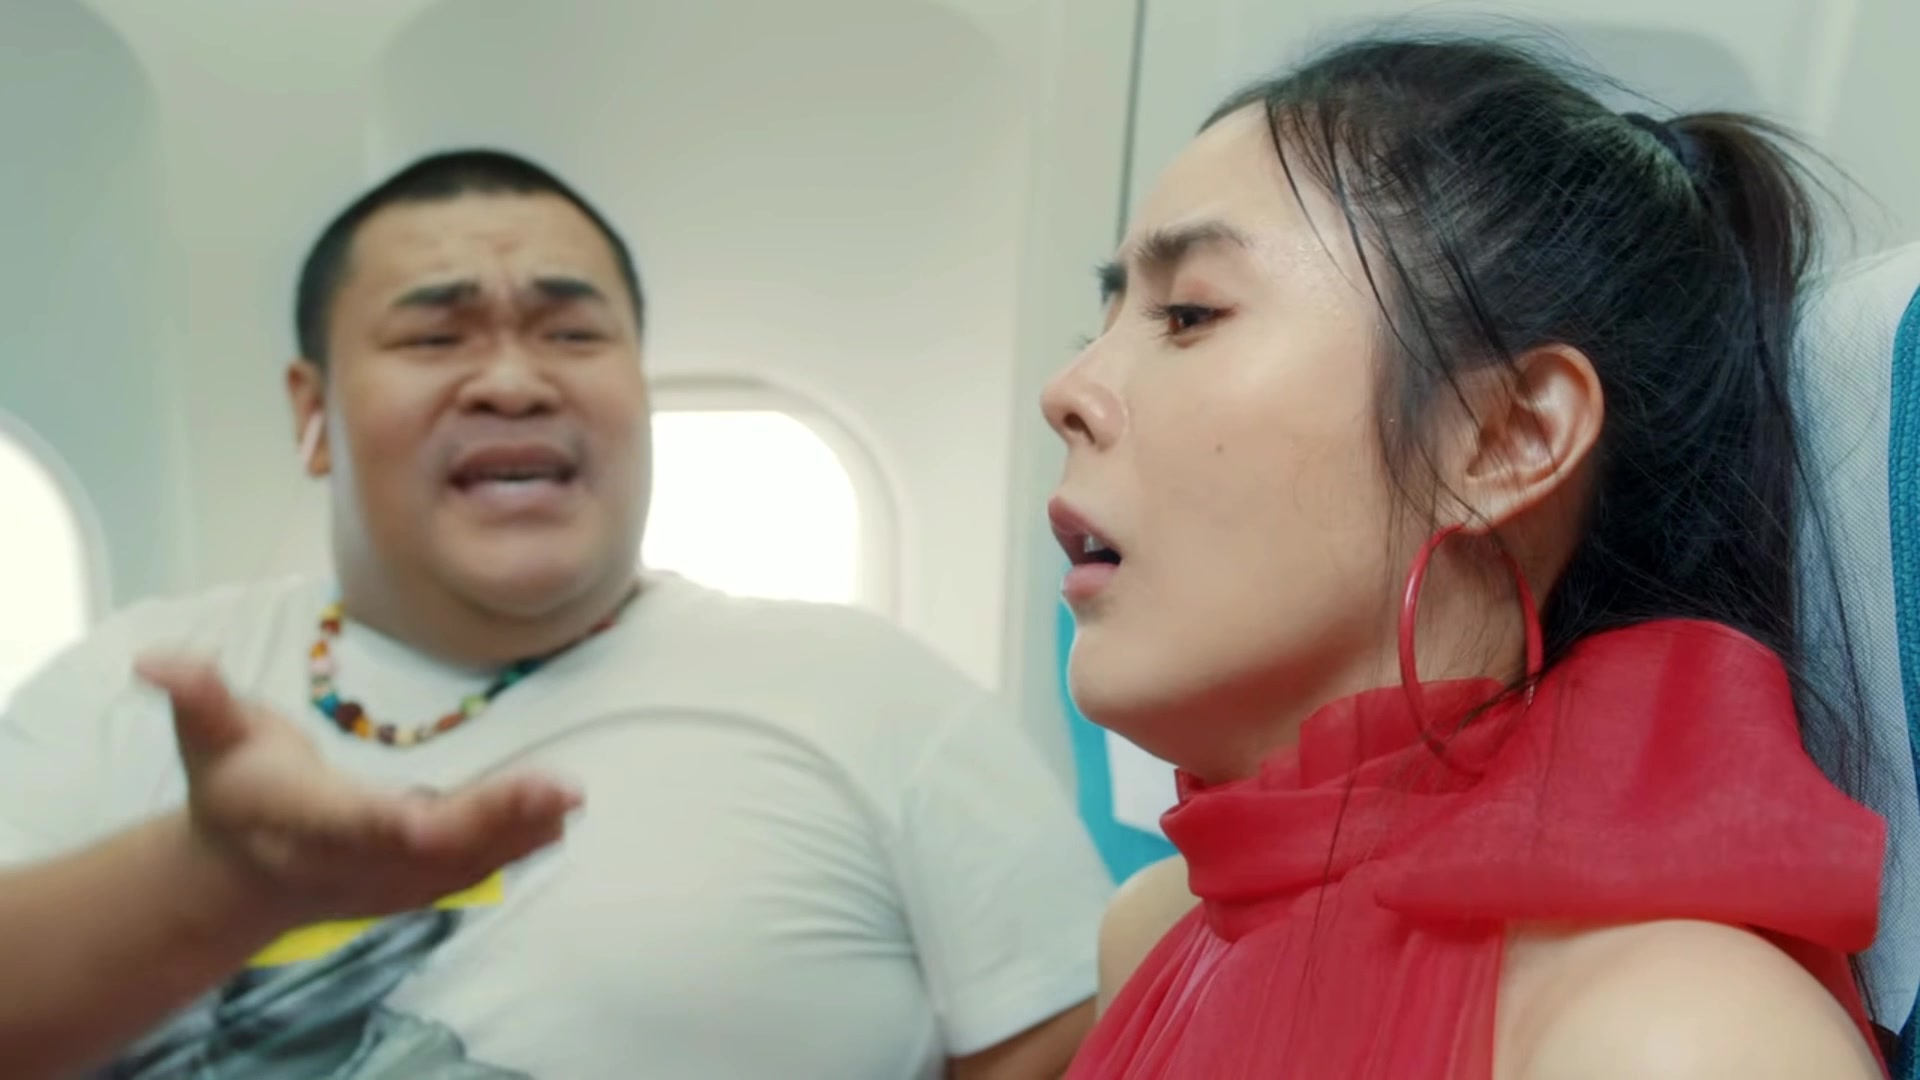 Thai girl poop desperation on plane